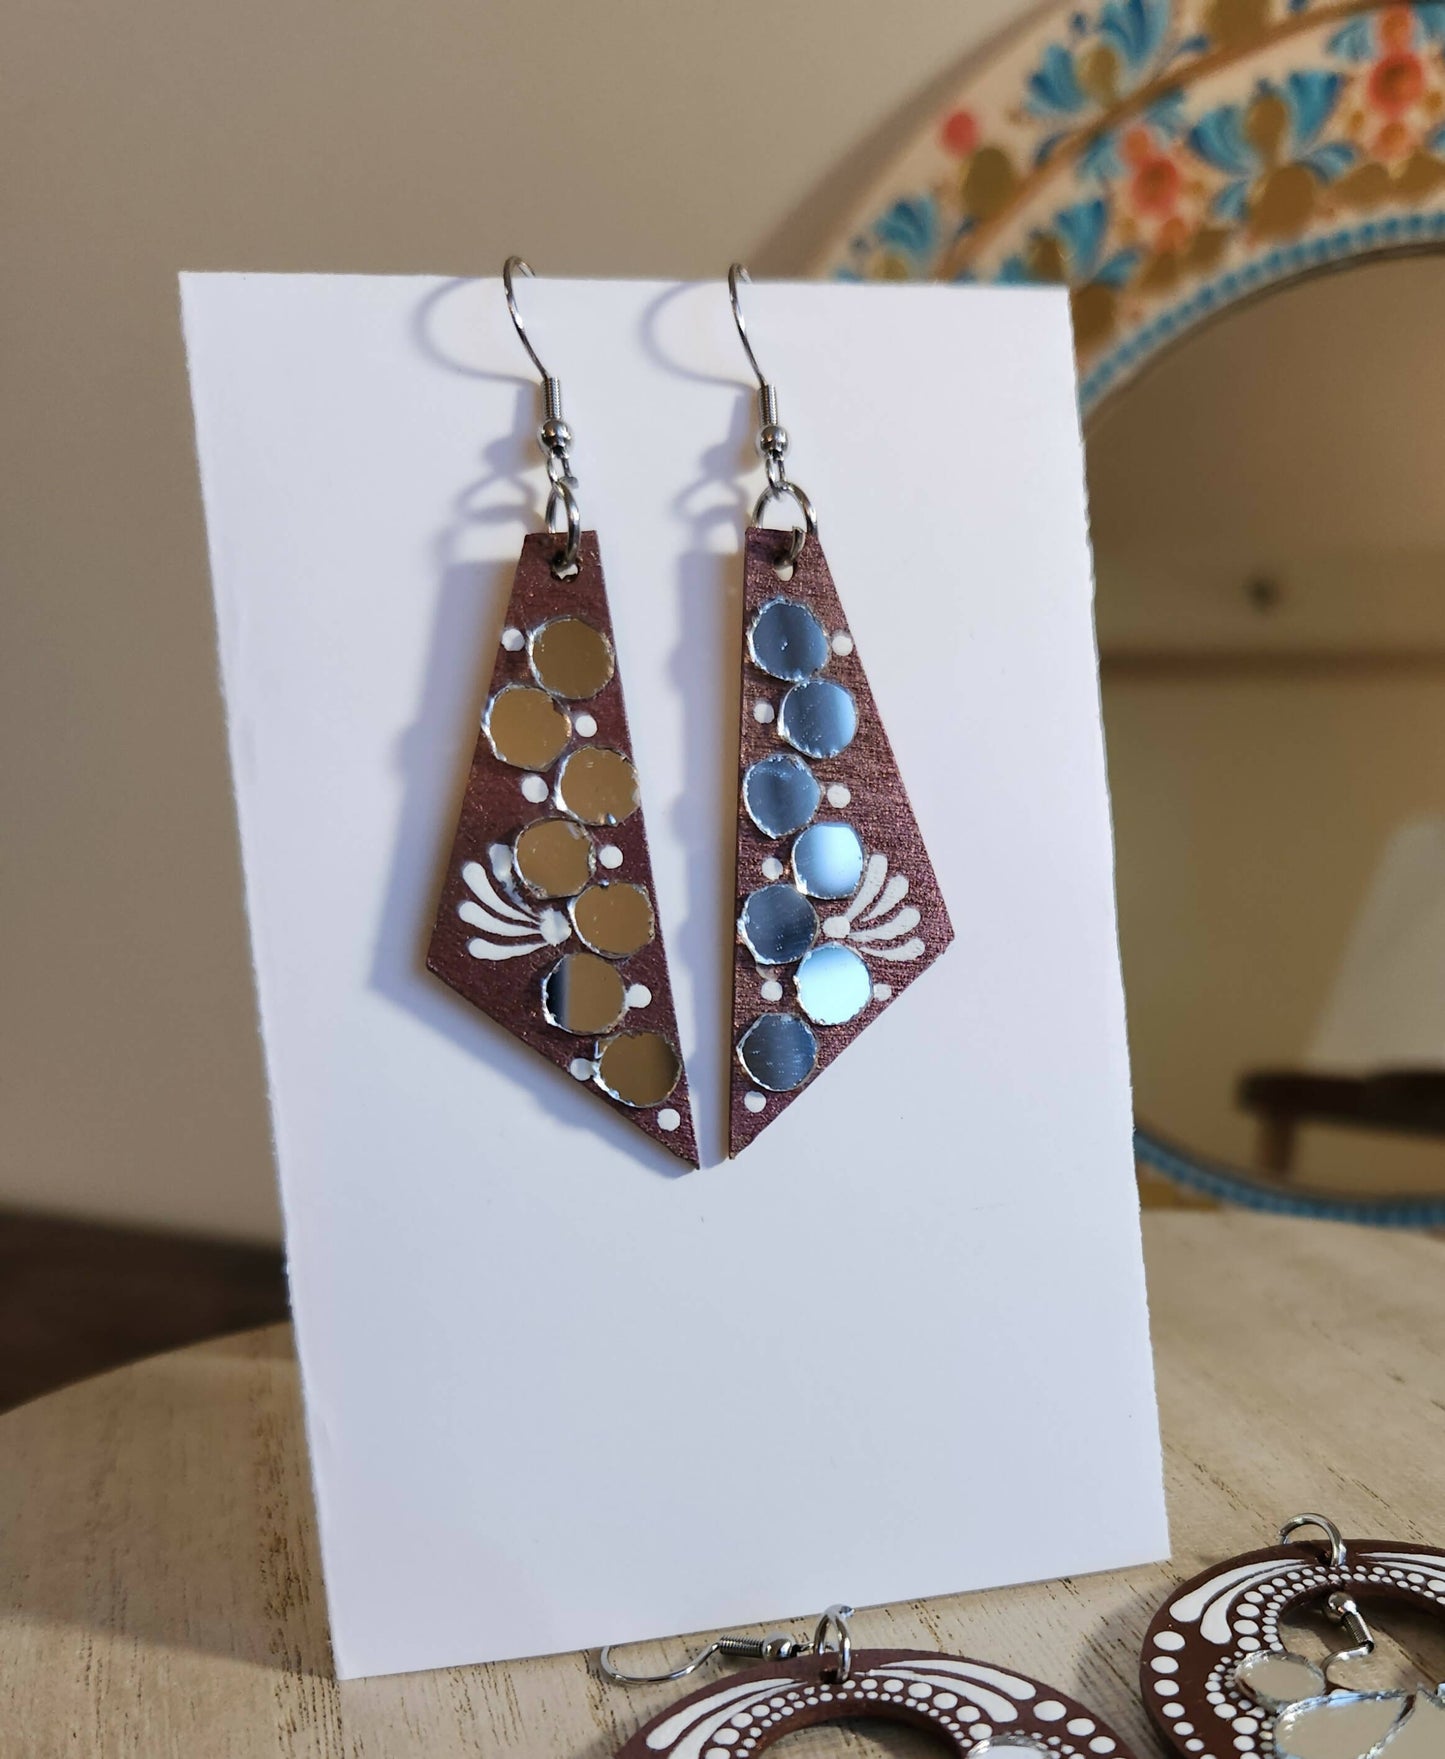 Hand-painted Wooden Earrings – Kreate